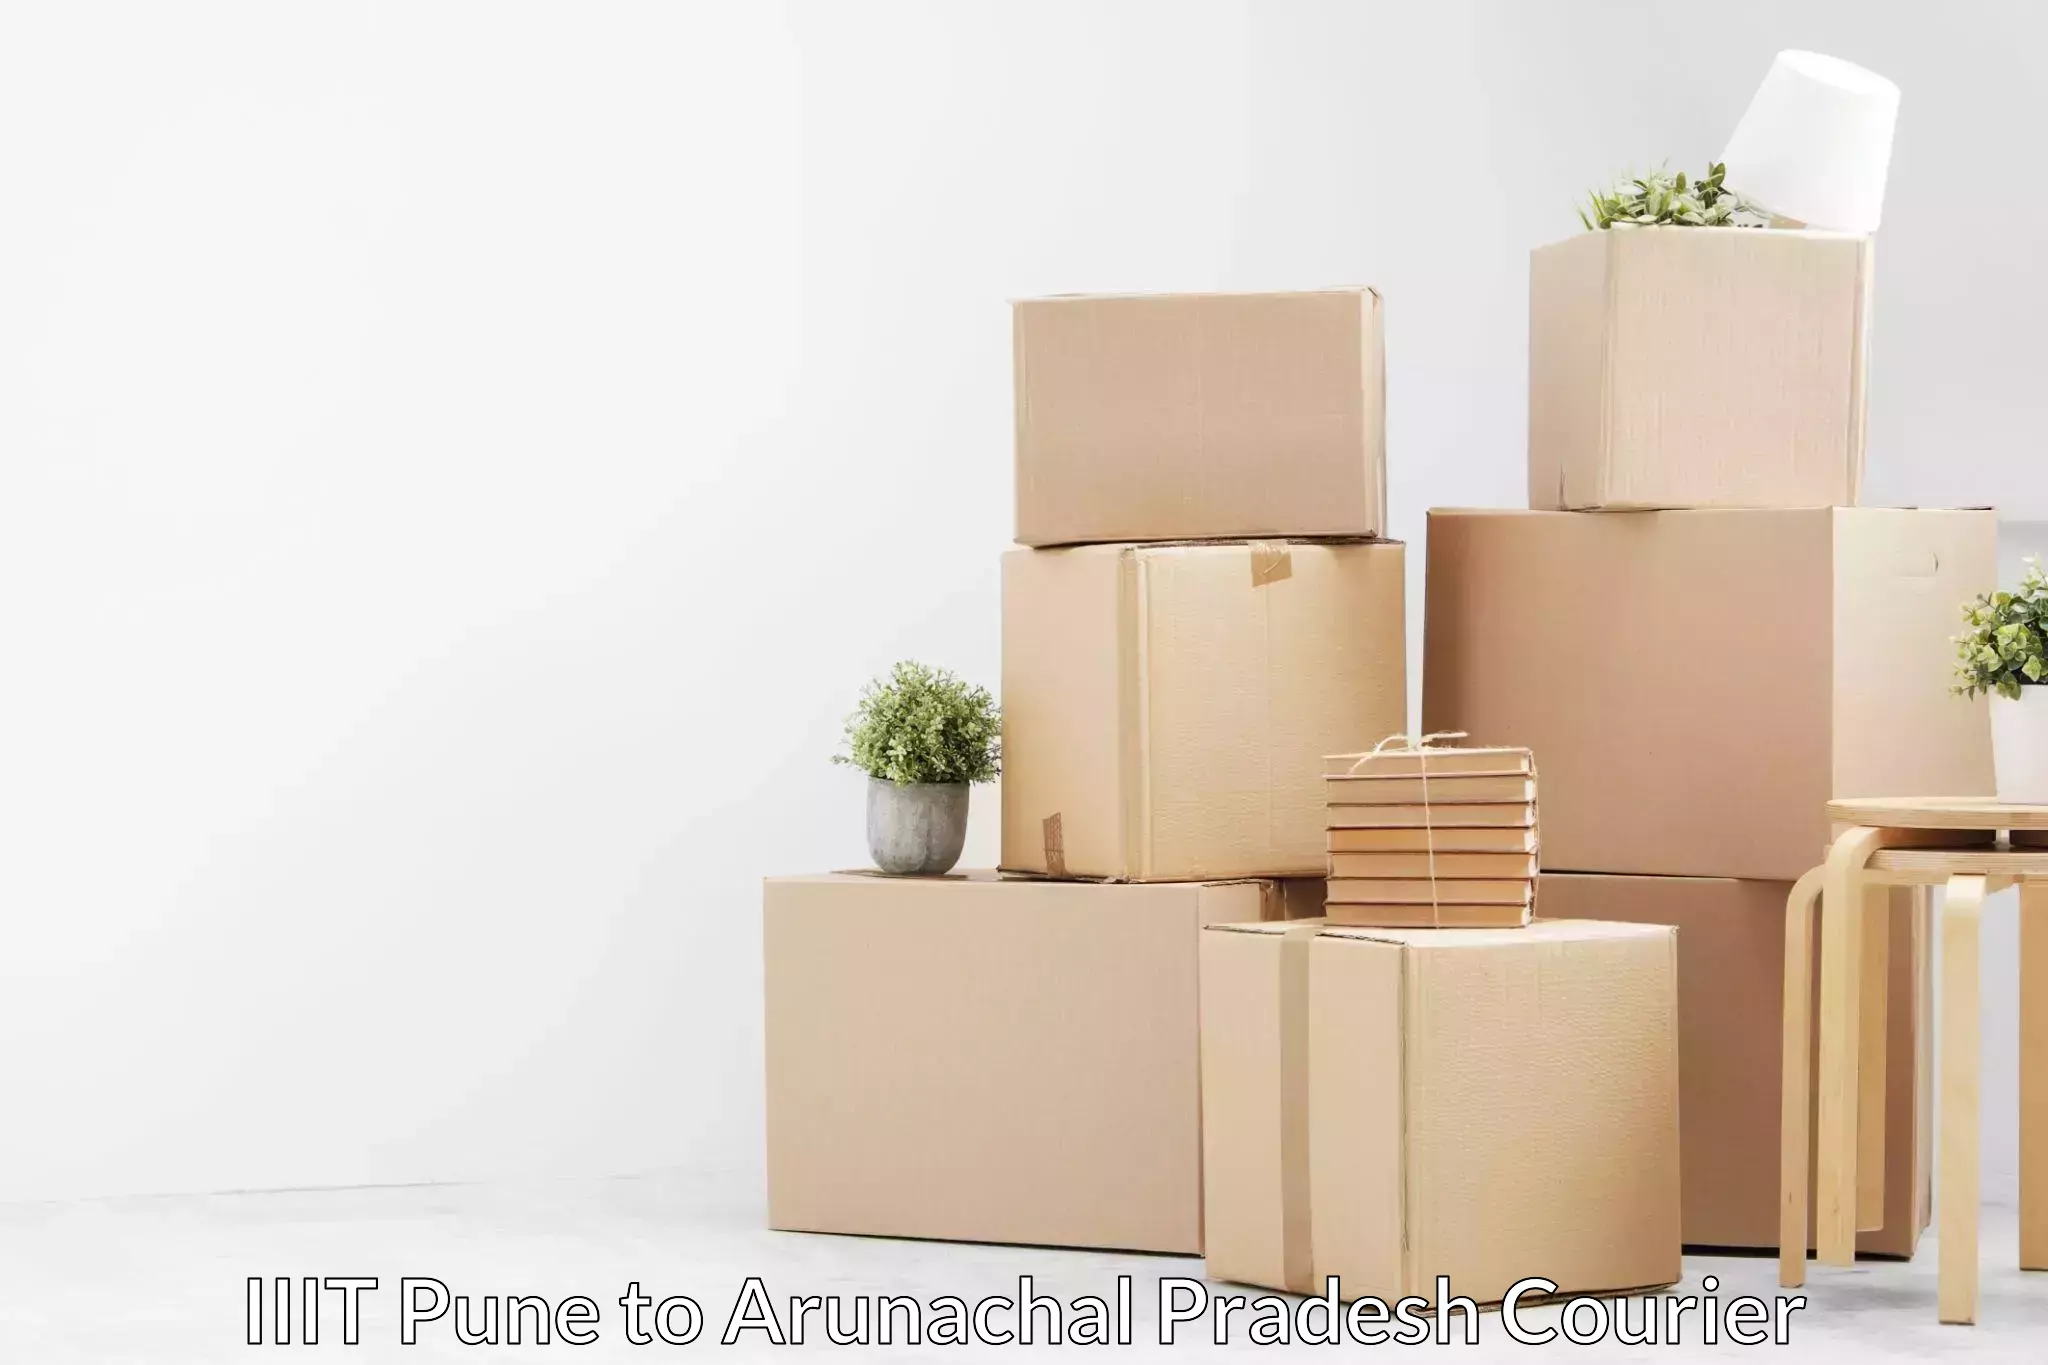 Furniture moving experts IIIT Pune to Jairampur